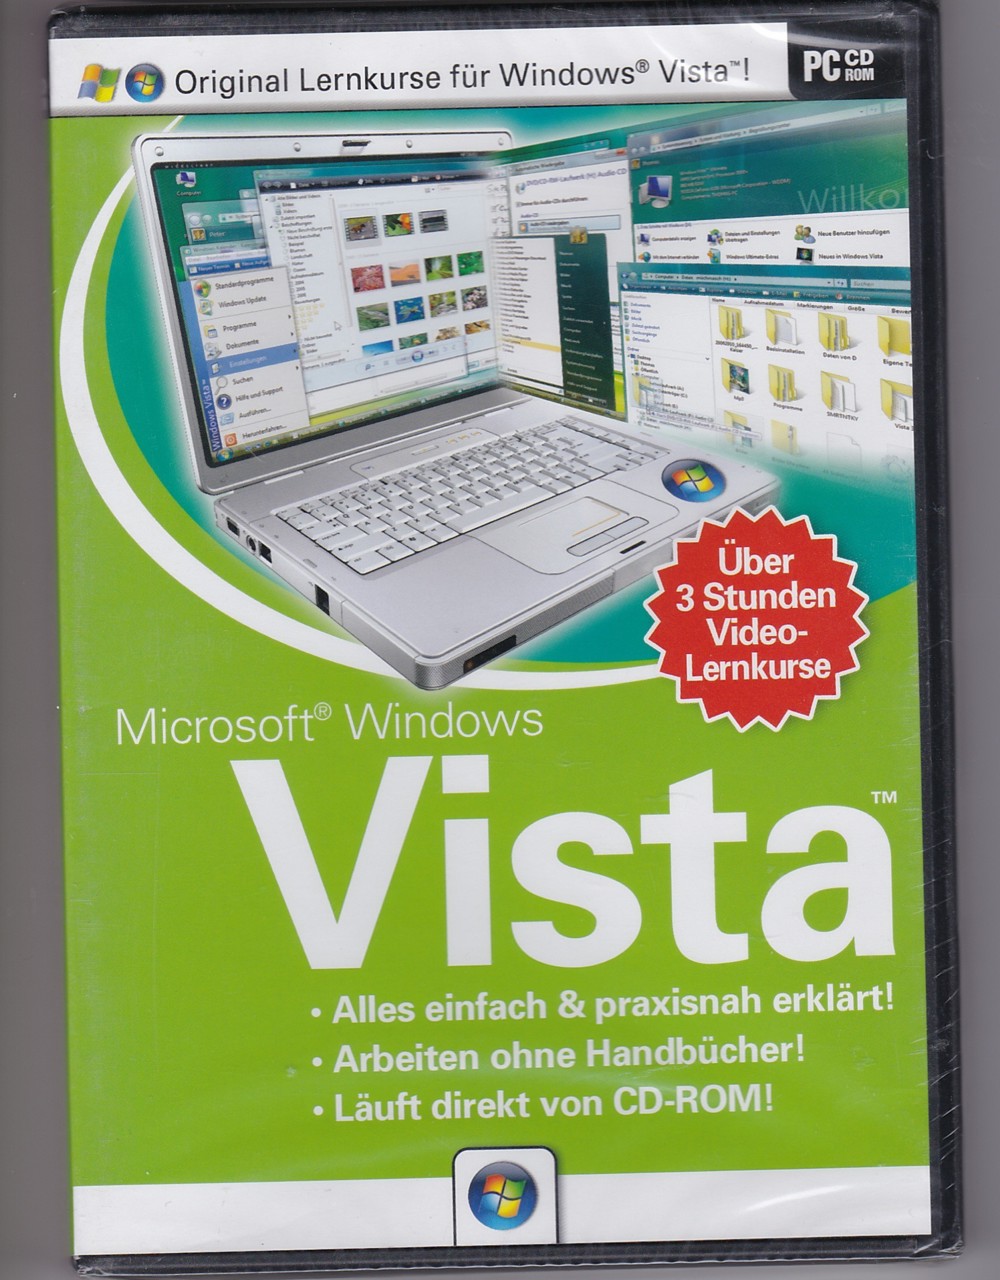 Microsoft Windows Vista Videolernkurs (über 3 Stunden auf CD-Rom)